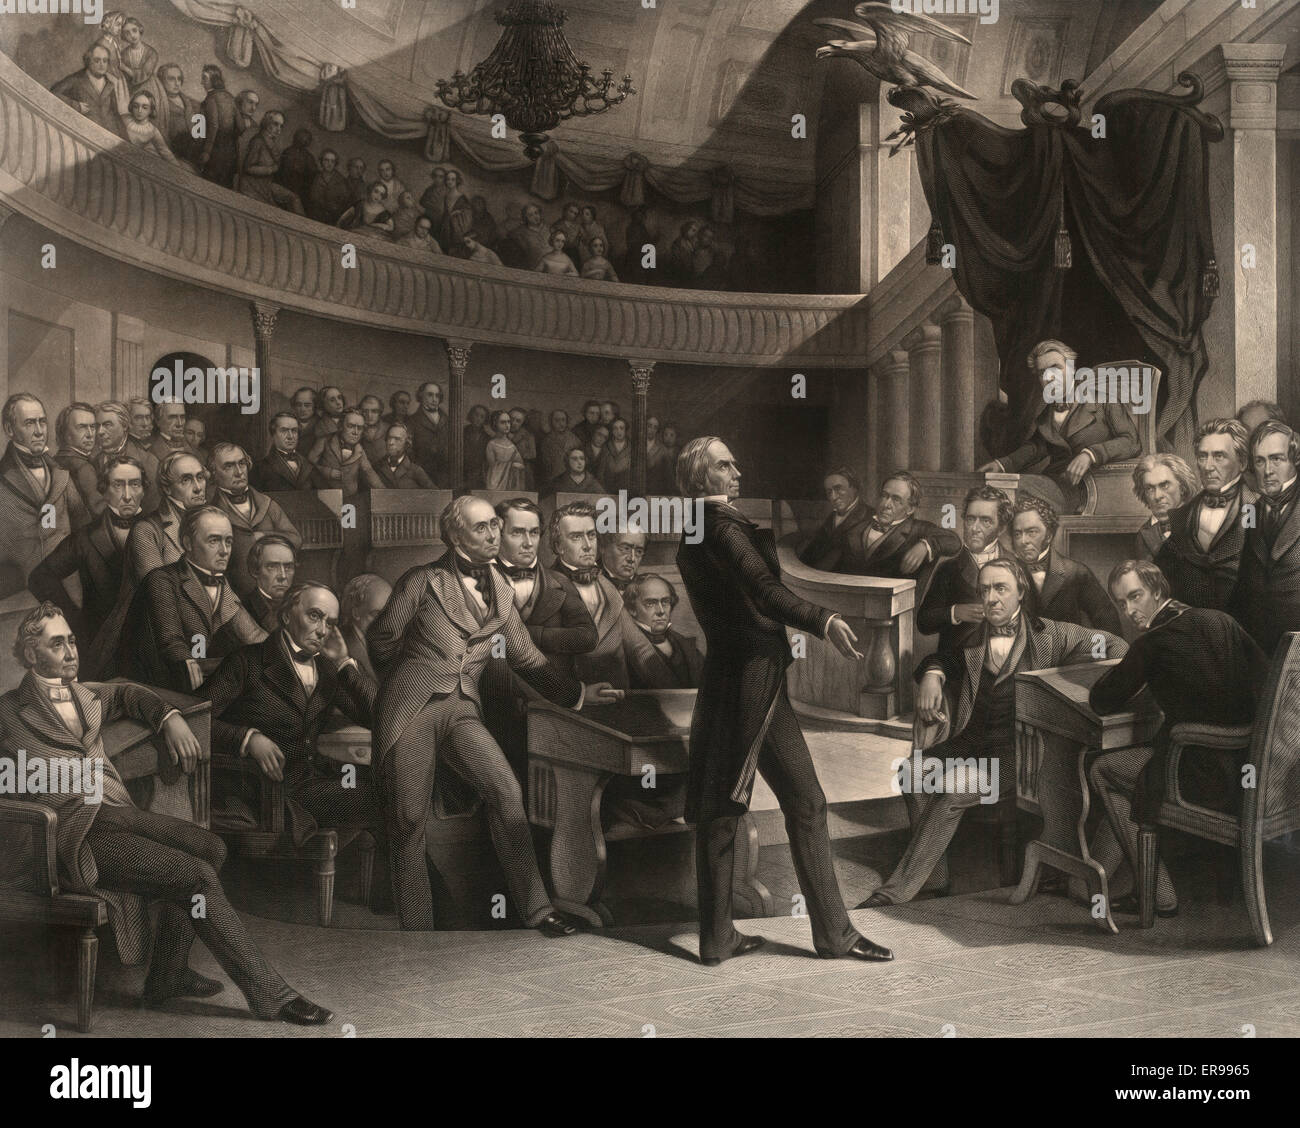 Der Senat der Vereinigten Staaten, A.D. 1850. Druck zeigt Senator Henry Clay spricht über den Kompromiss von 1850 in der alte Senat Kammer. Daniel Webster sitzt auf der linken Seite aus Lehm und John C. Calhoun auf der linken Seite des Sprechers Stuhl. Datum c1855. Stockfoto